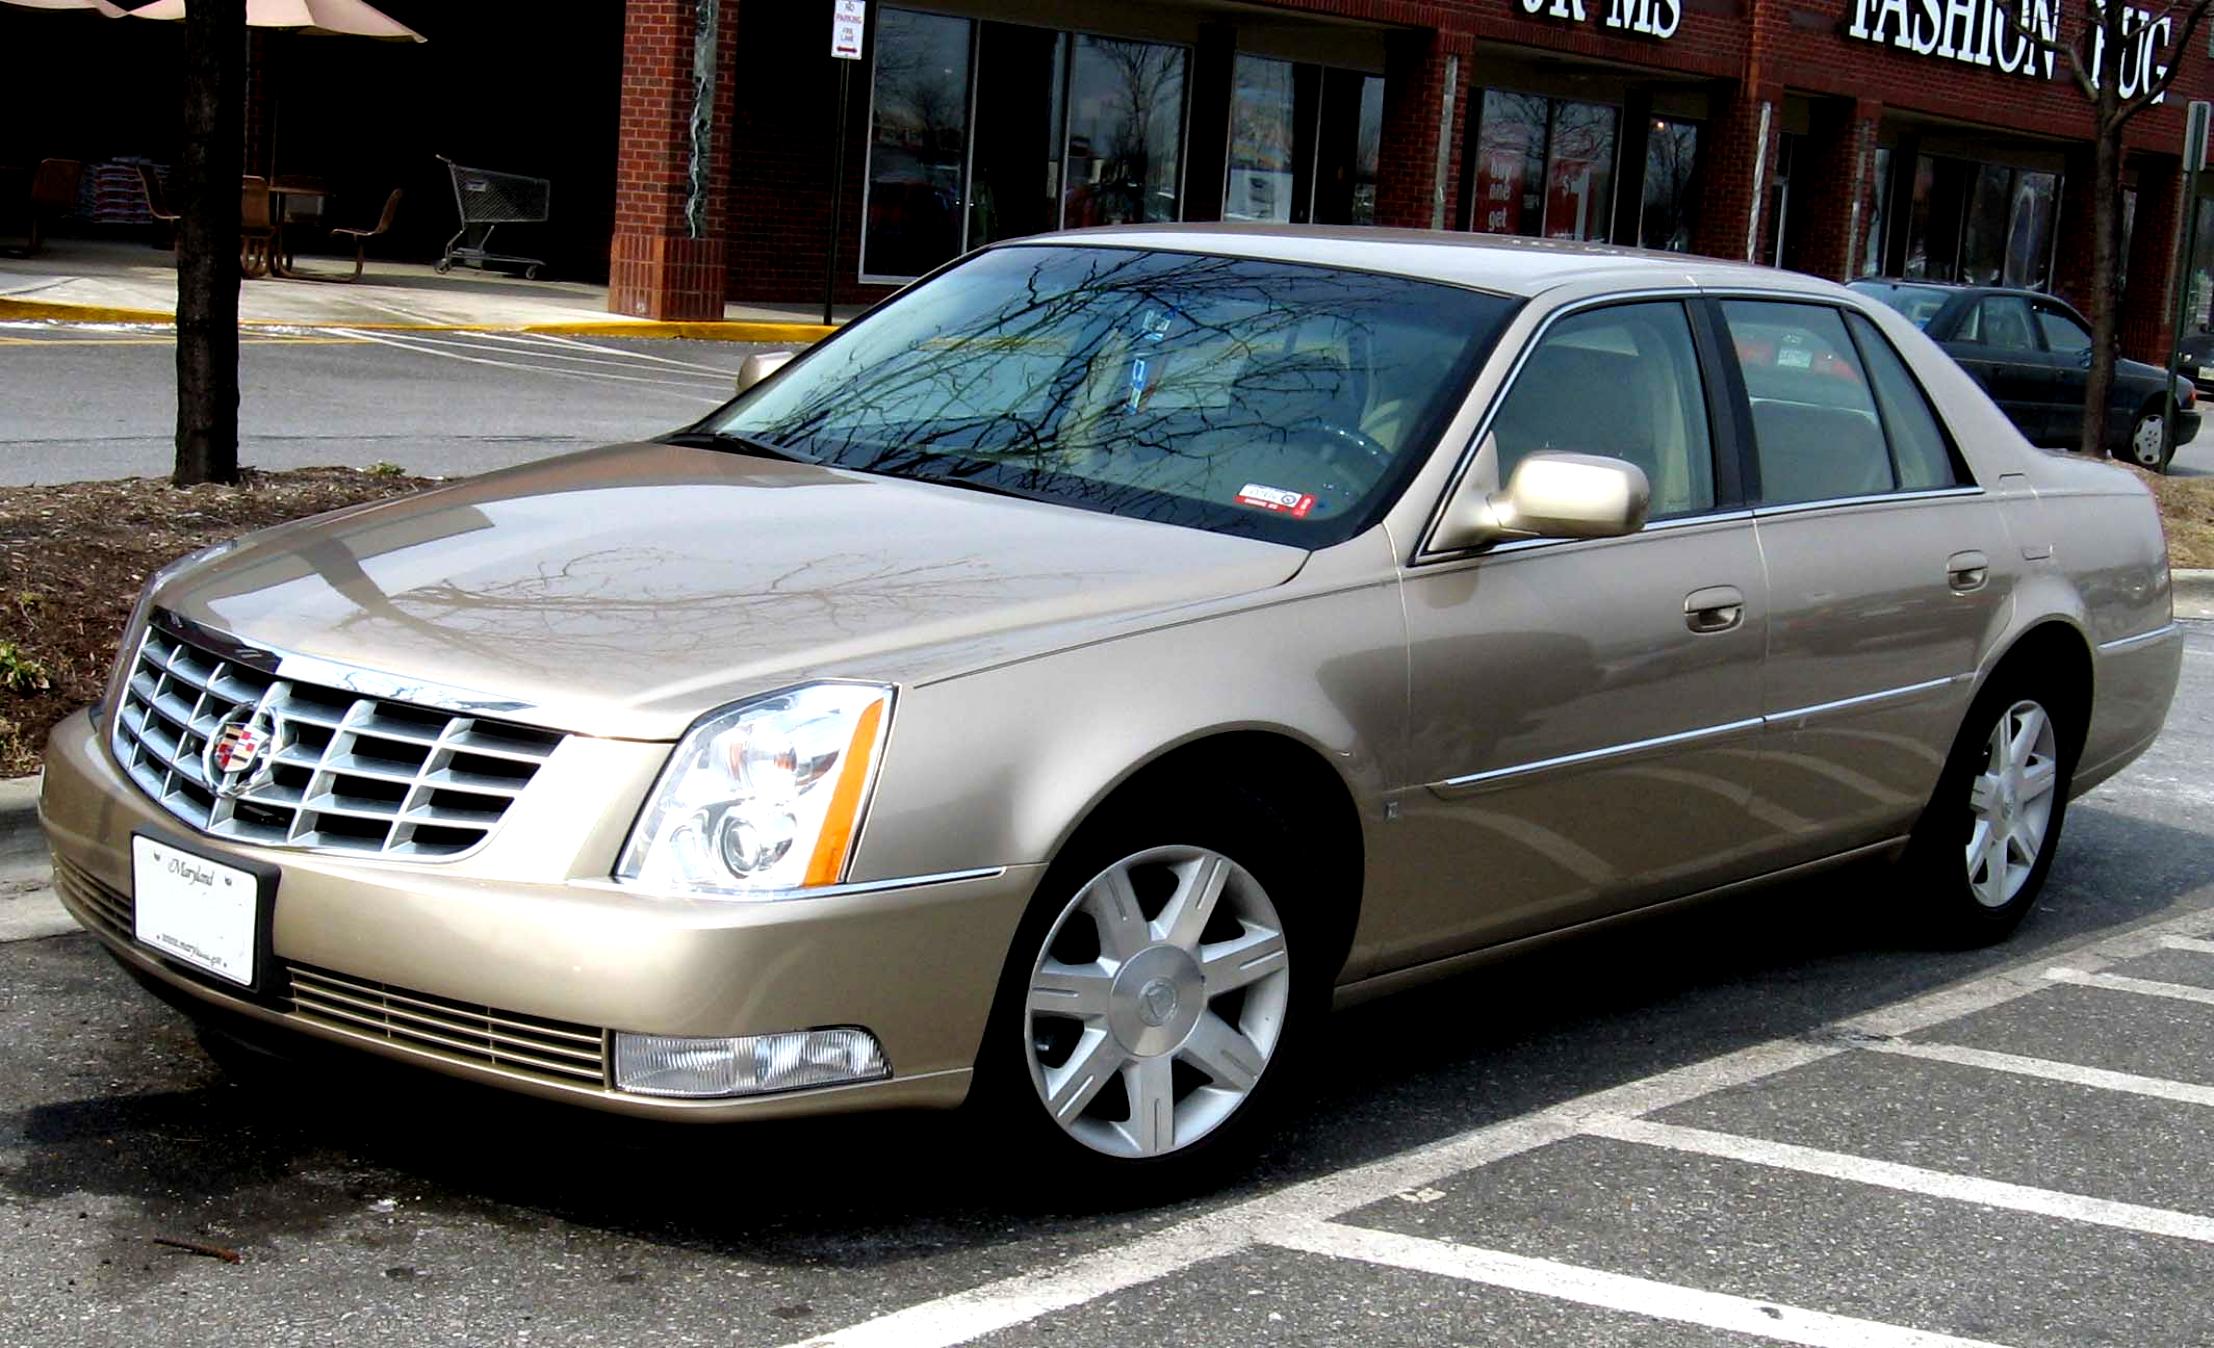 Cadillac DTS 2005 #1